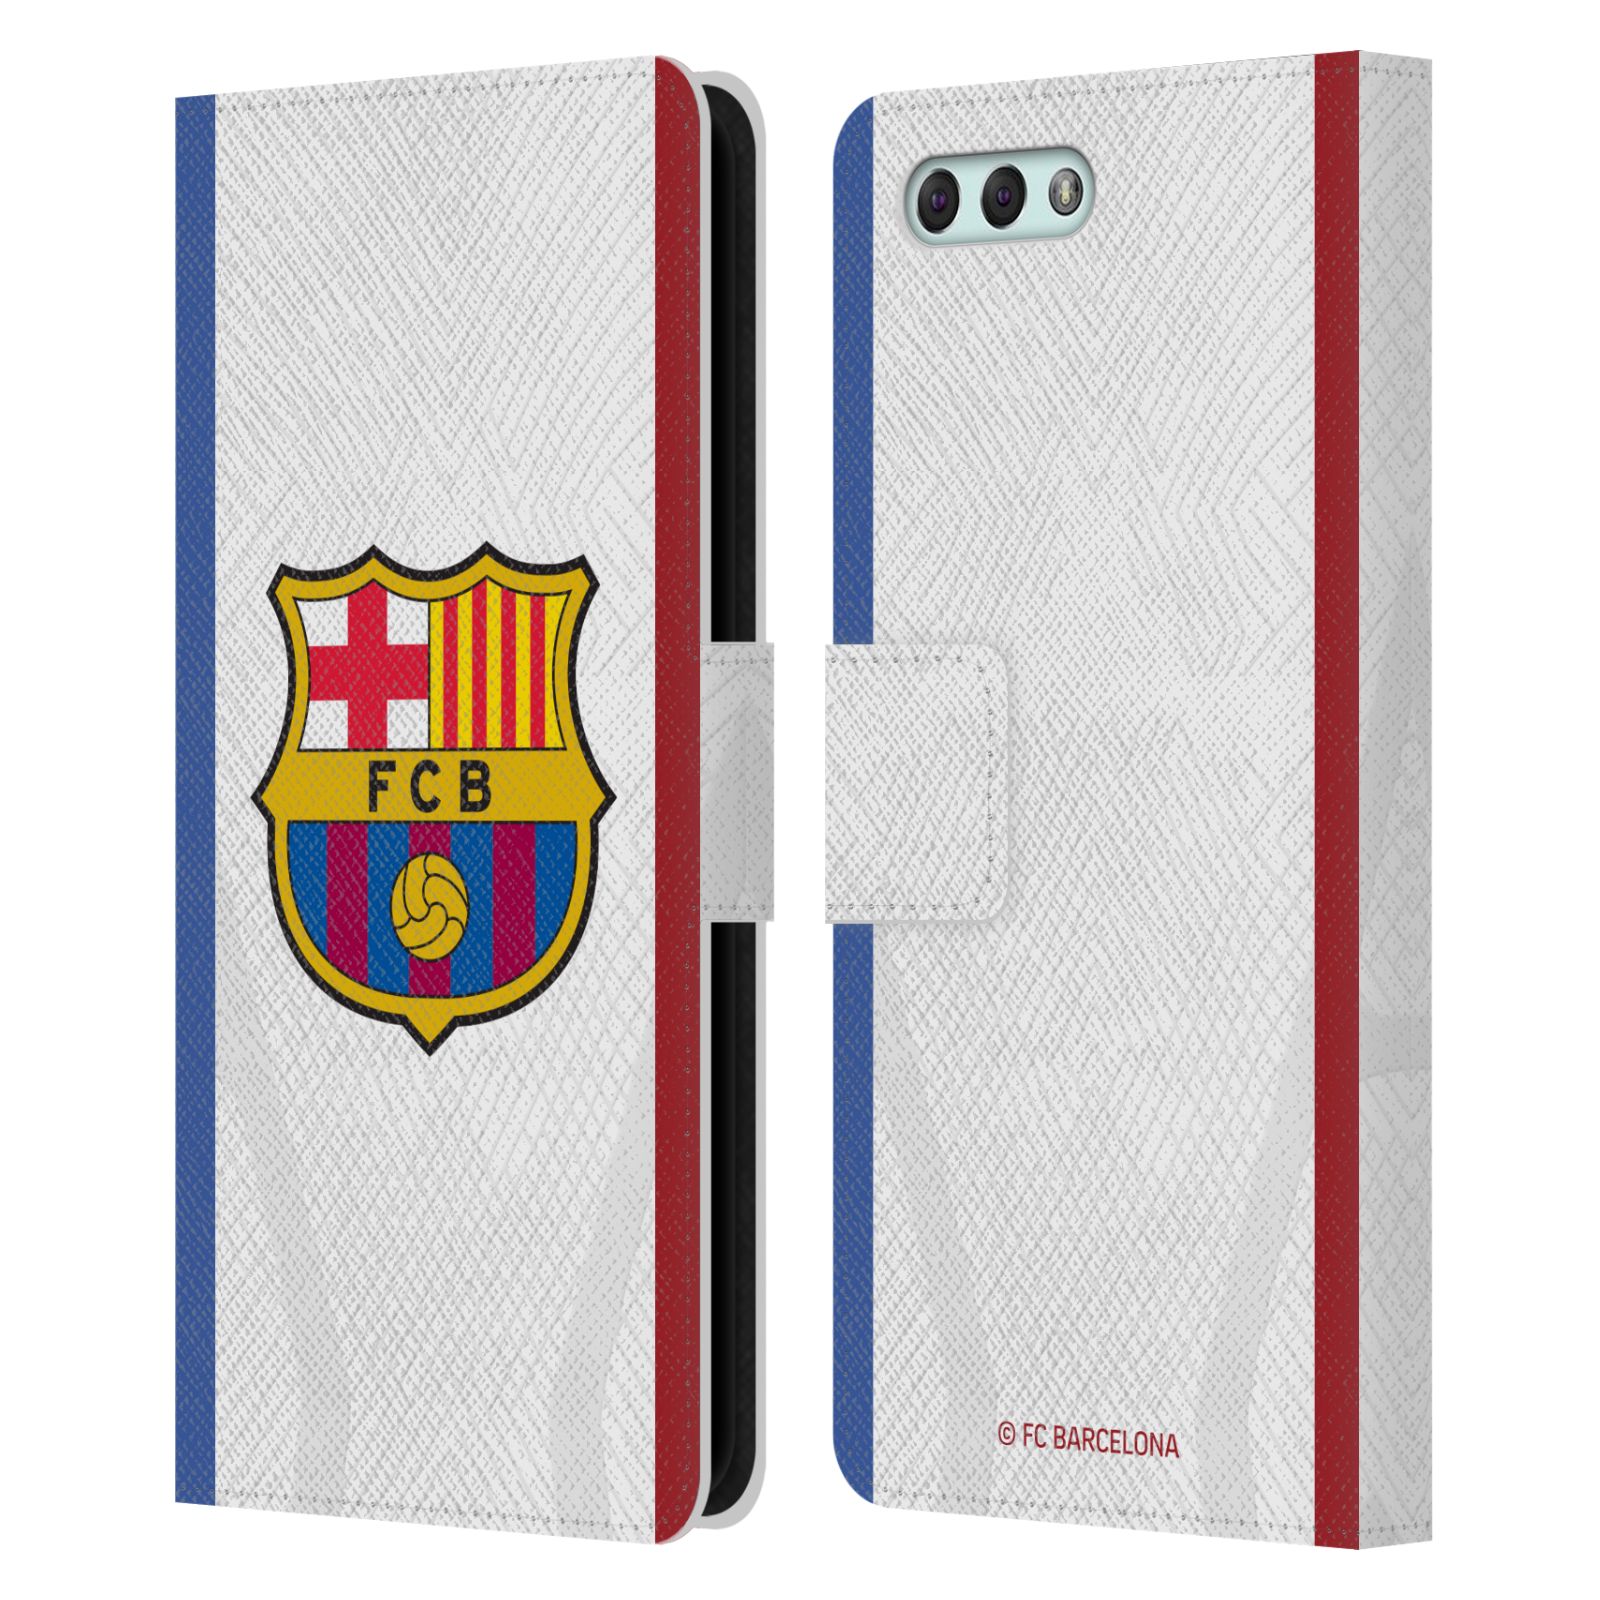 Pouzdro na mobil Asus Zenfone 4 ZE554KL  - HEAD CASE - FC Barcelona - Dres hosté 23/24 2